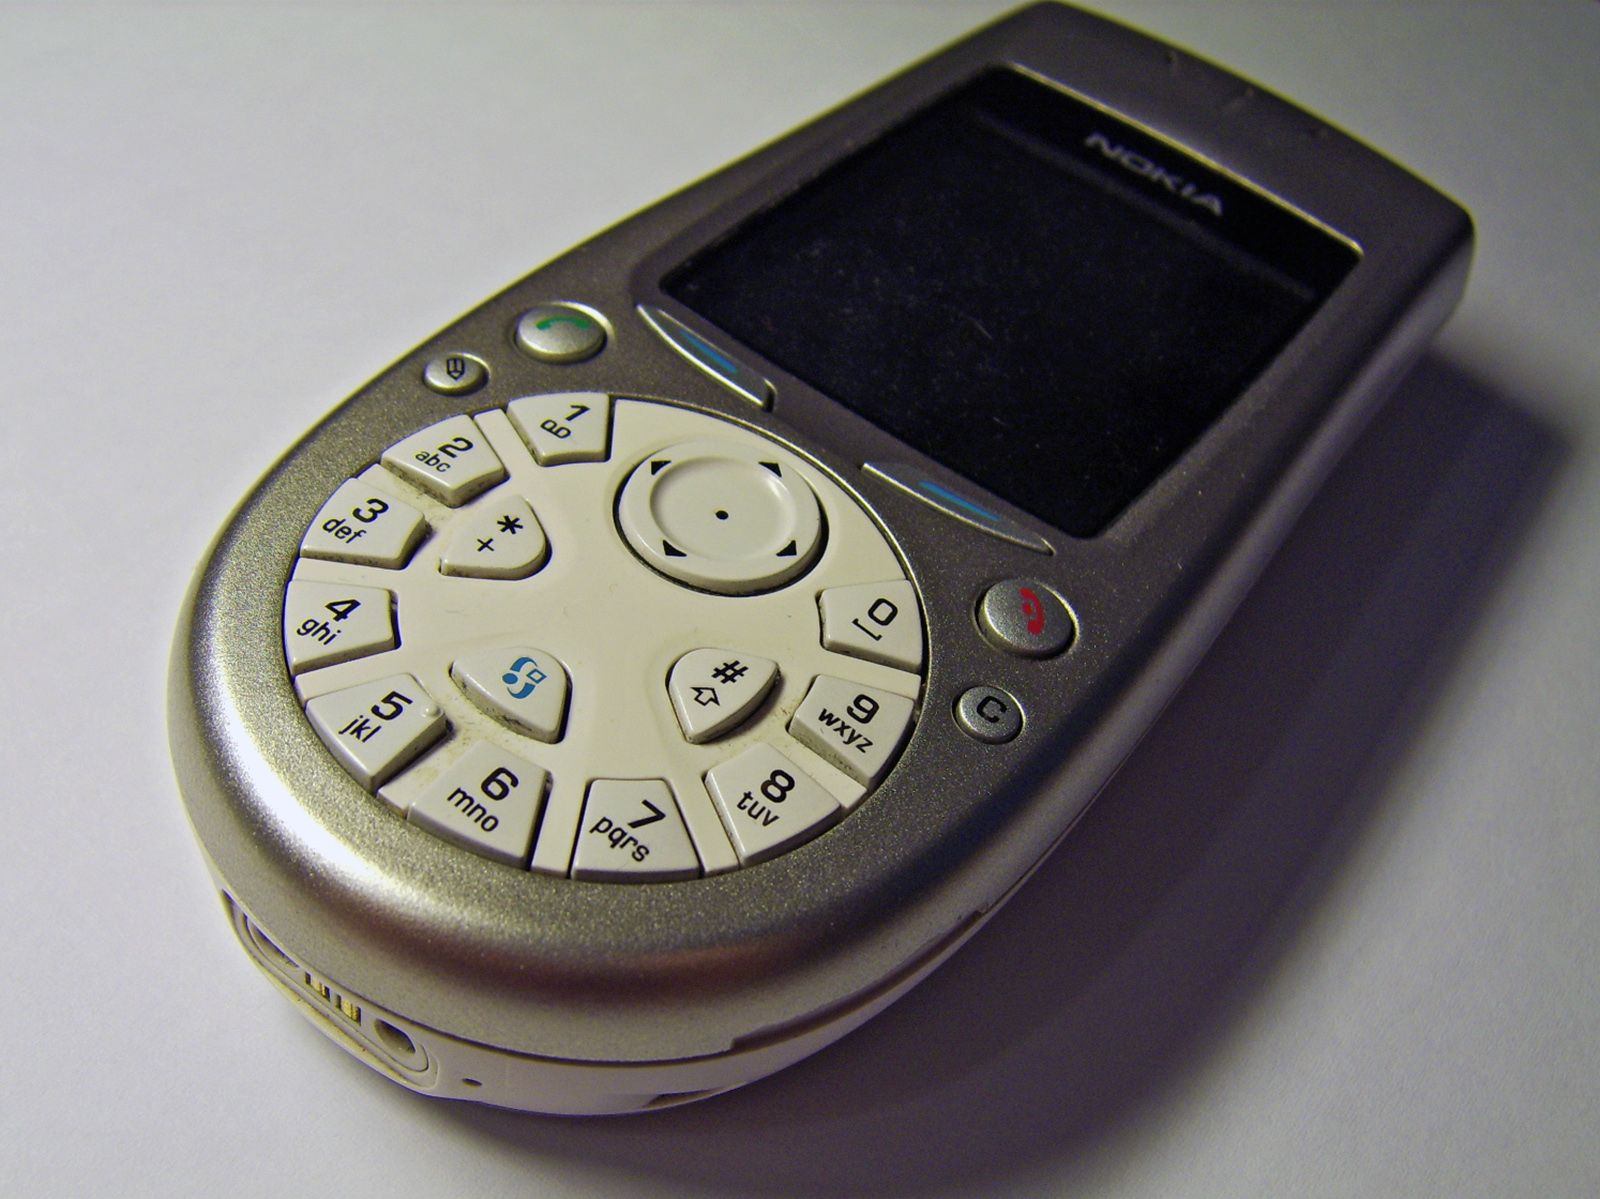 Где найти старый телефон. Nokia 3650. Смартфон Nokia 3650. Нокиа с камерой 3650. Смартфон Nokia 7650.